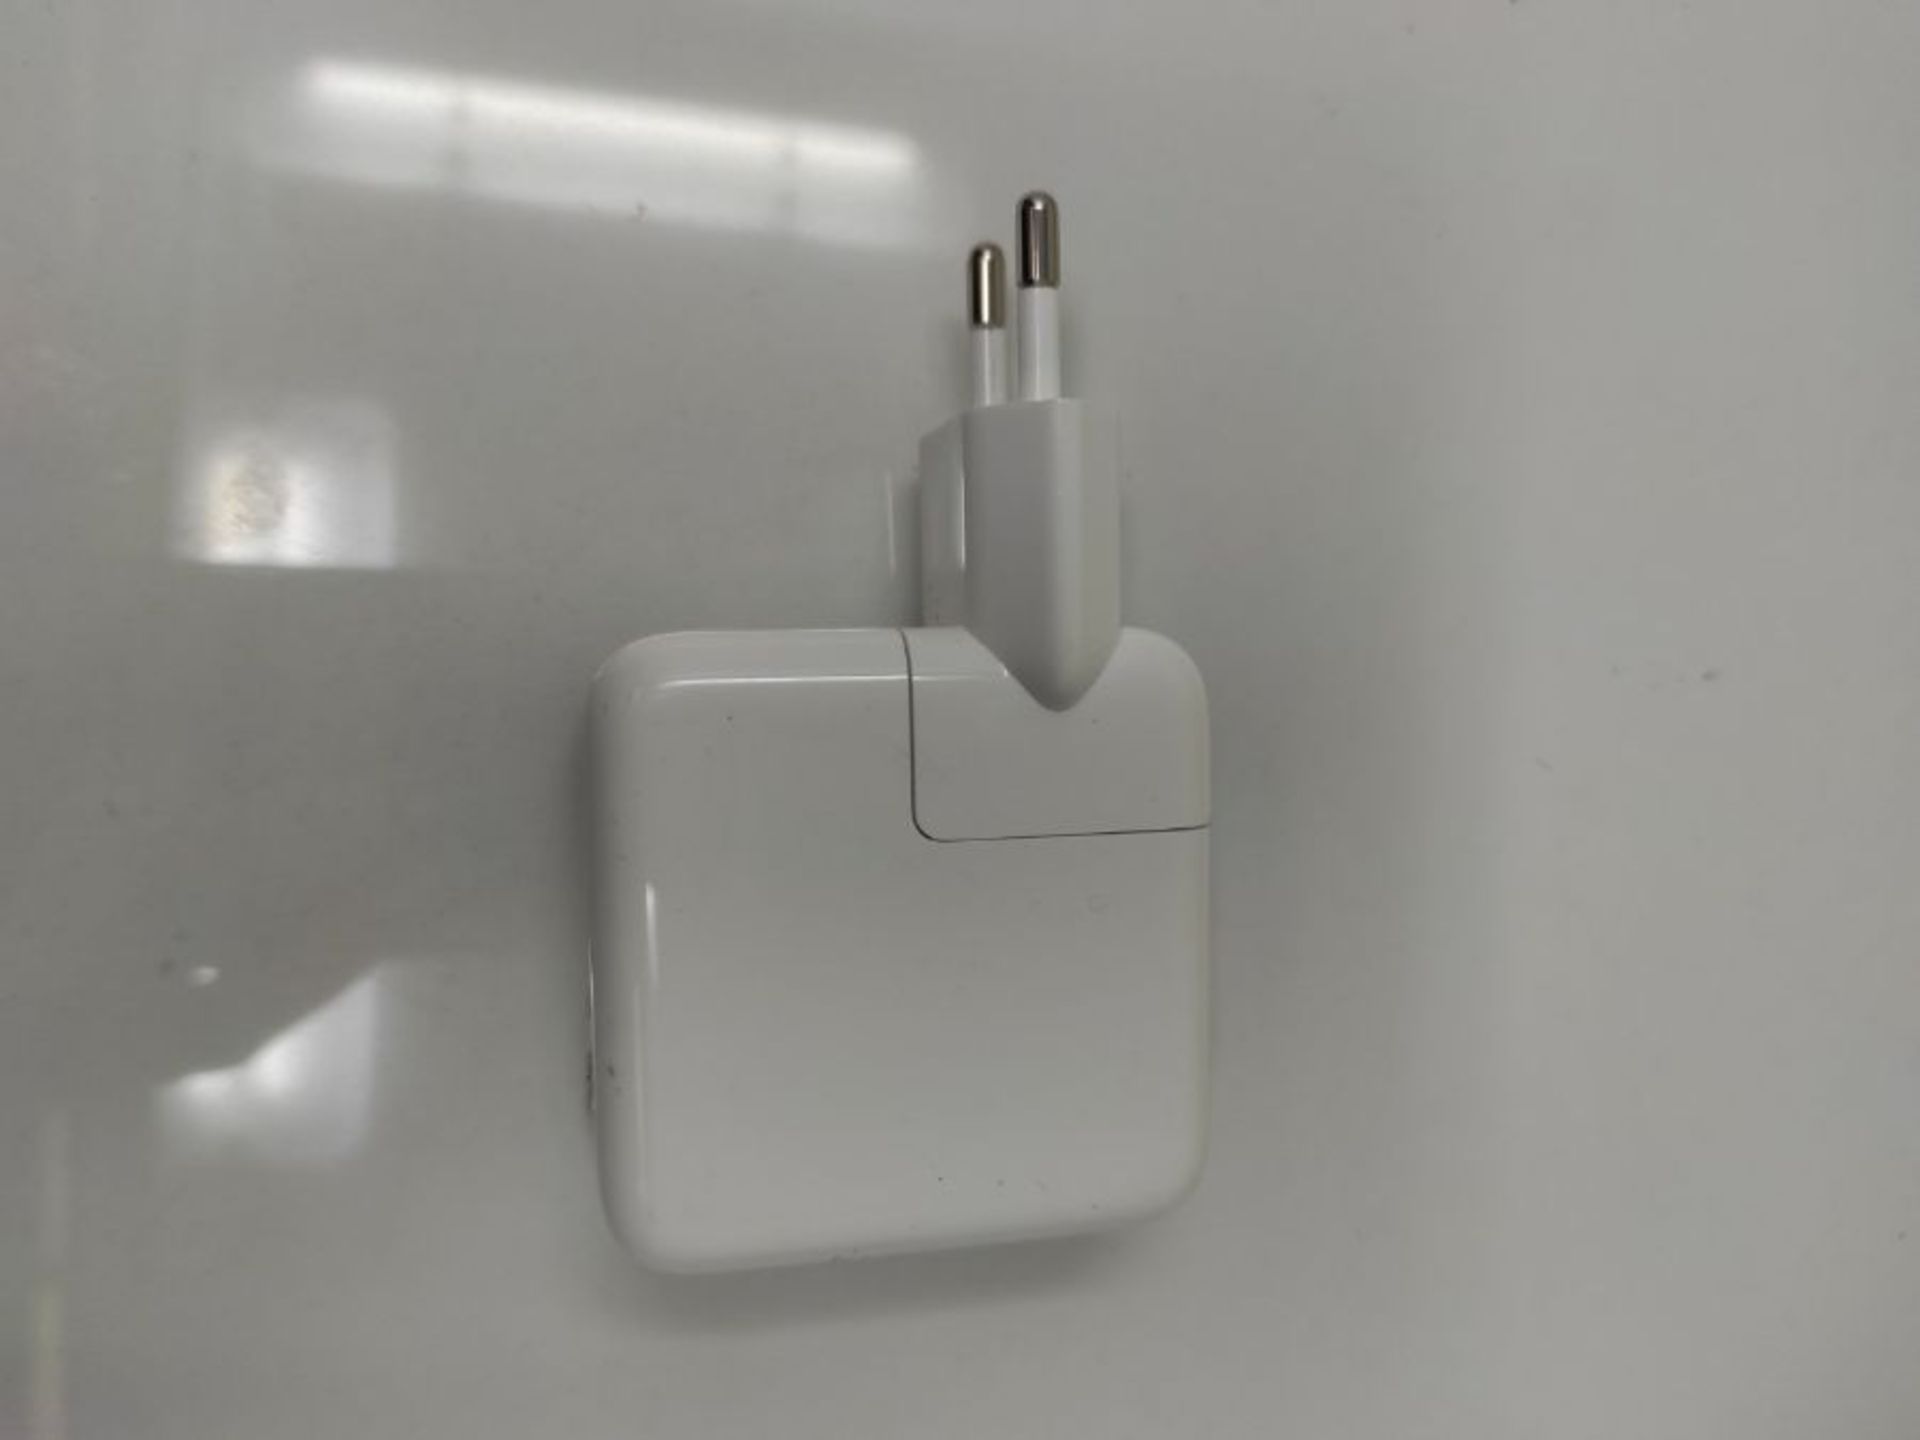 Apple 30W USB C Power Adapter - Image 2 of 2